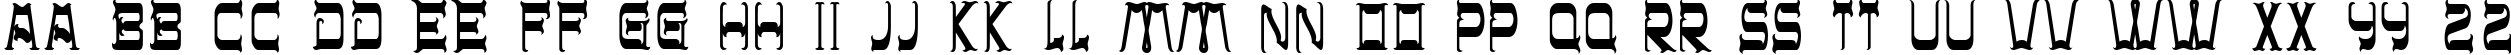 Пример написания английского алфавита шрифтом CHR32